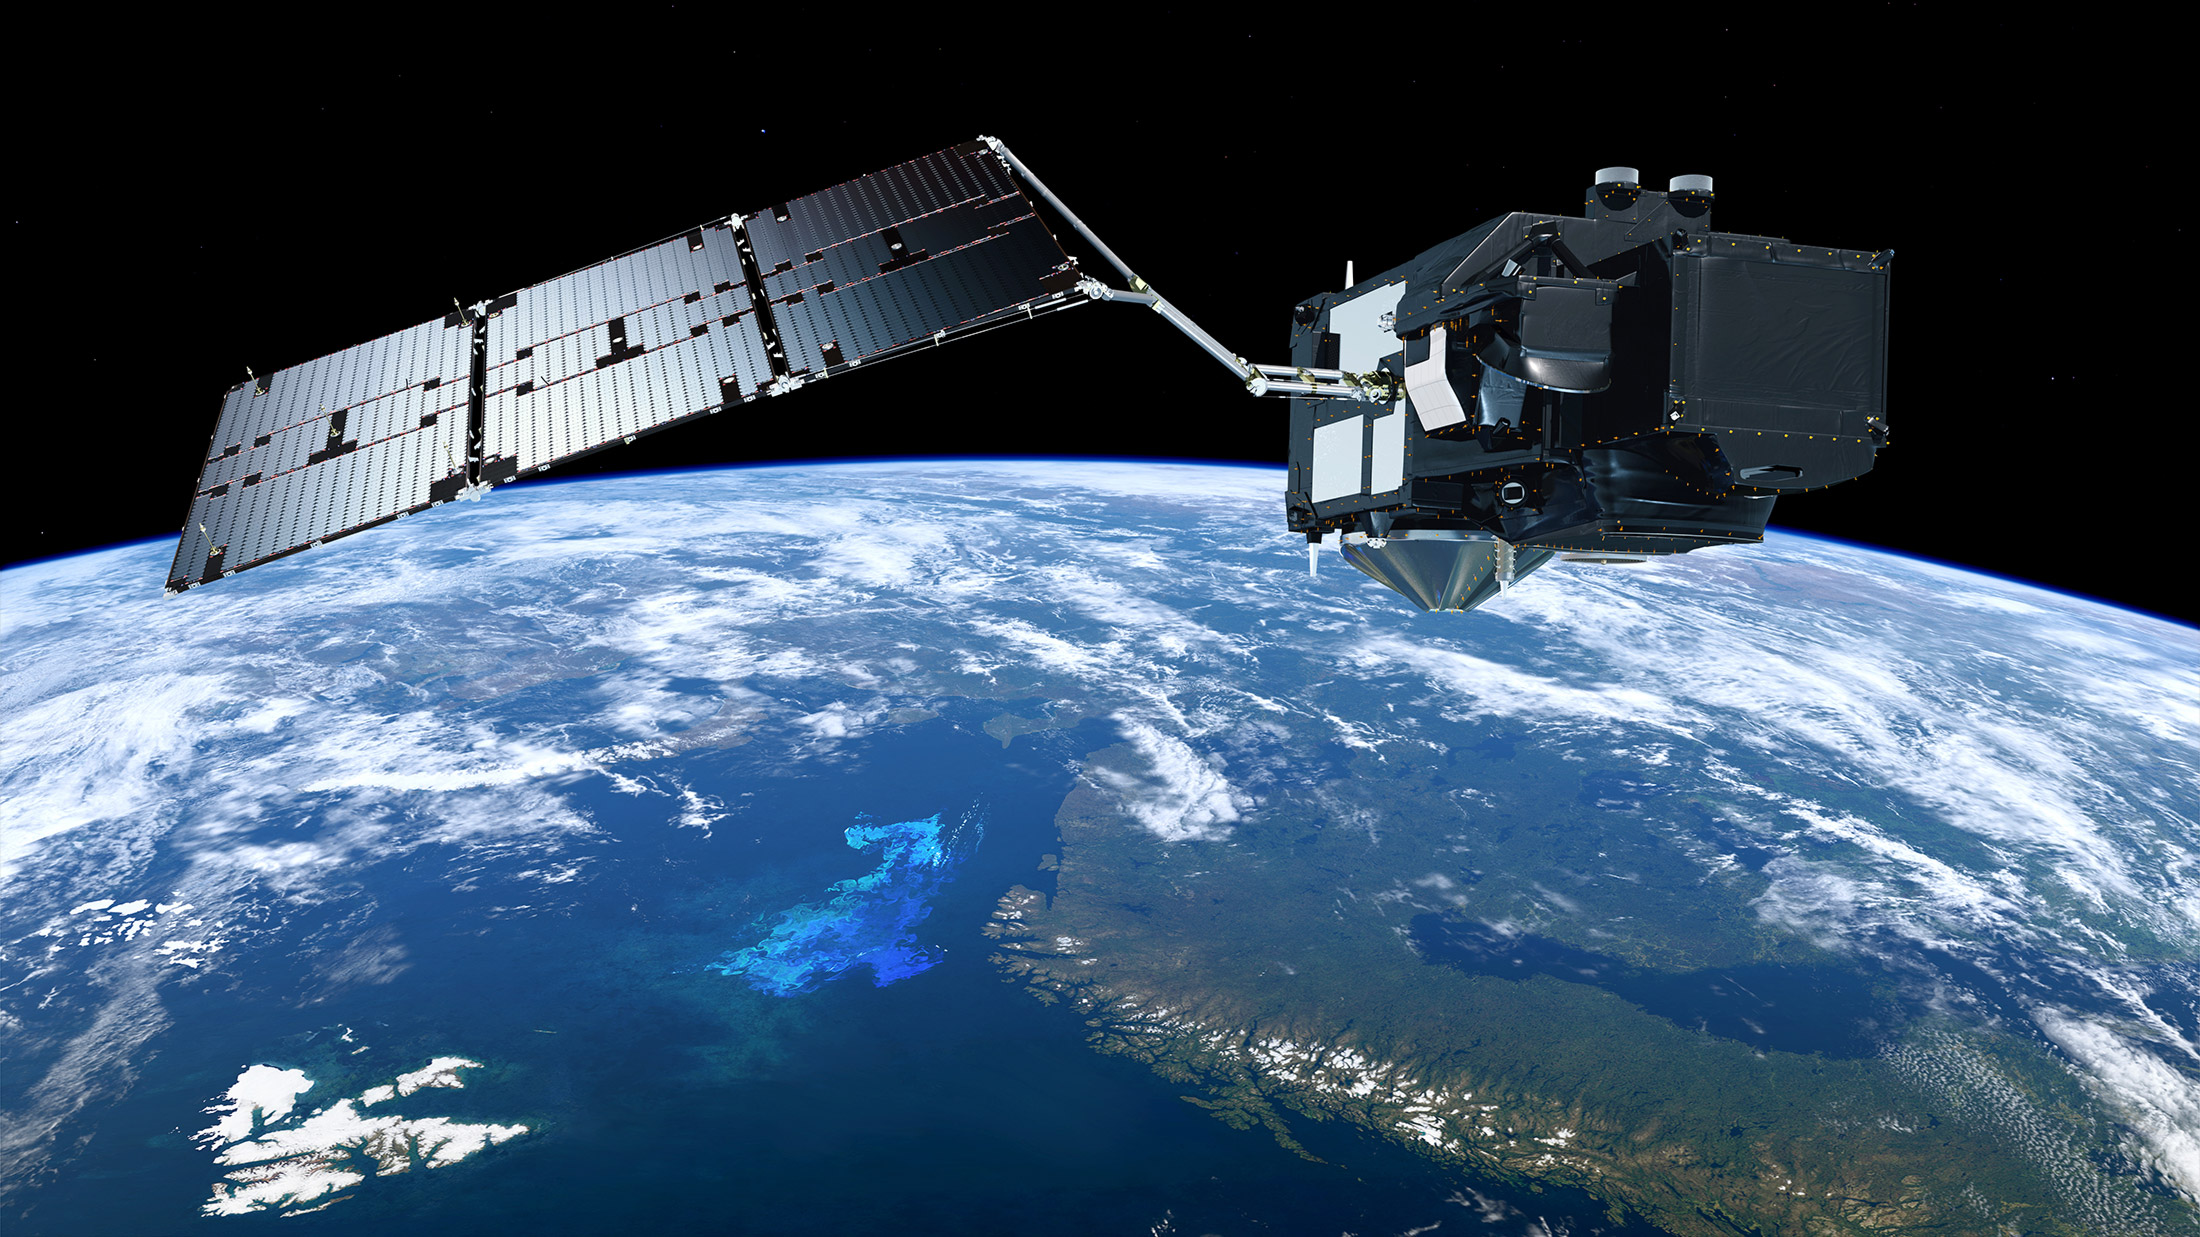 Vue d'artiste d'un satellite Sentinel 3 du programme Copernicus de la Commission européenne. © ESA, ATG medialab